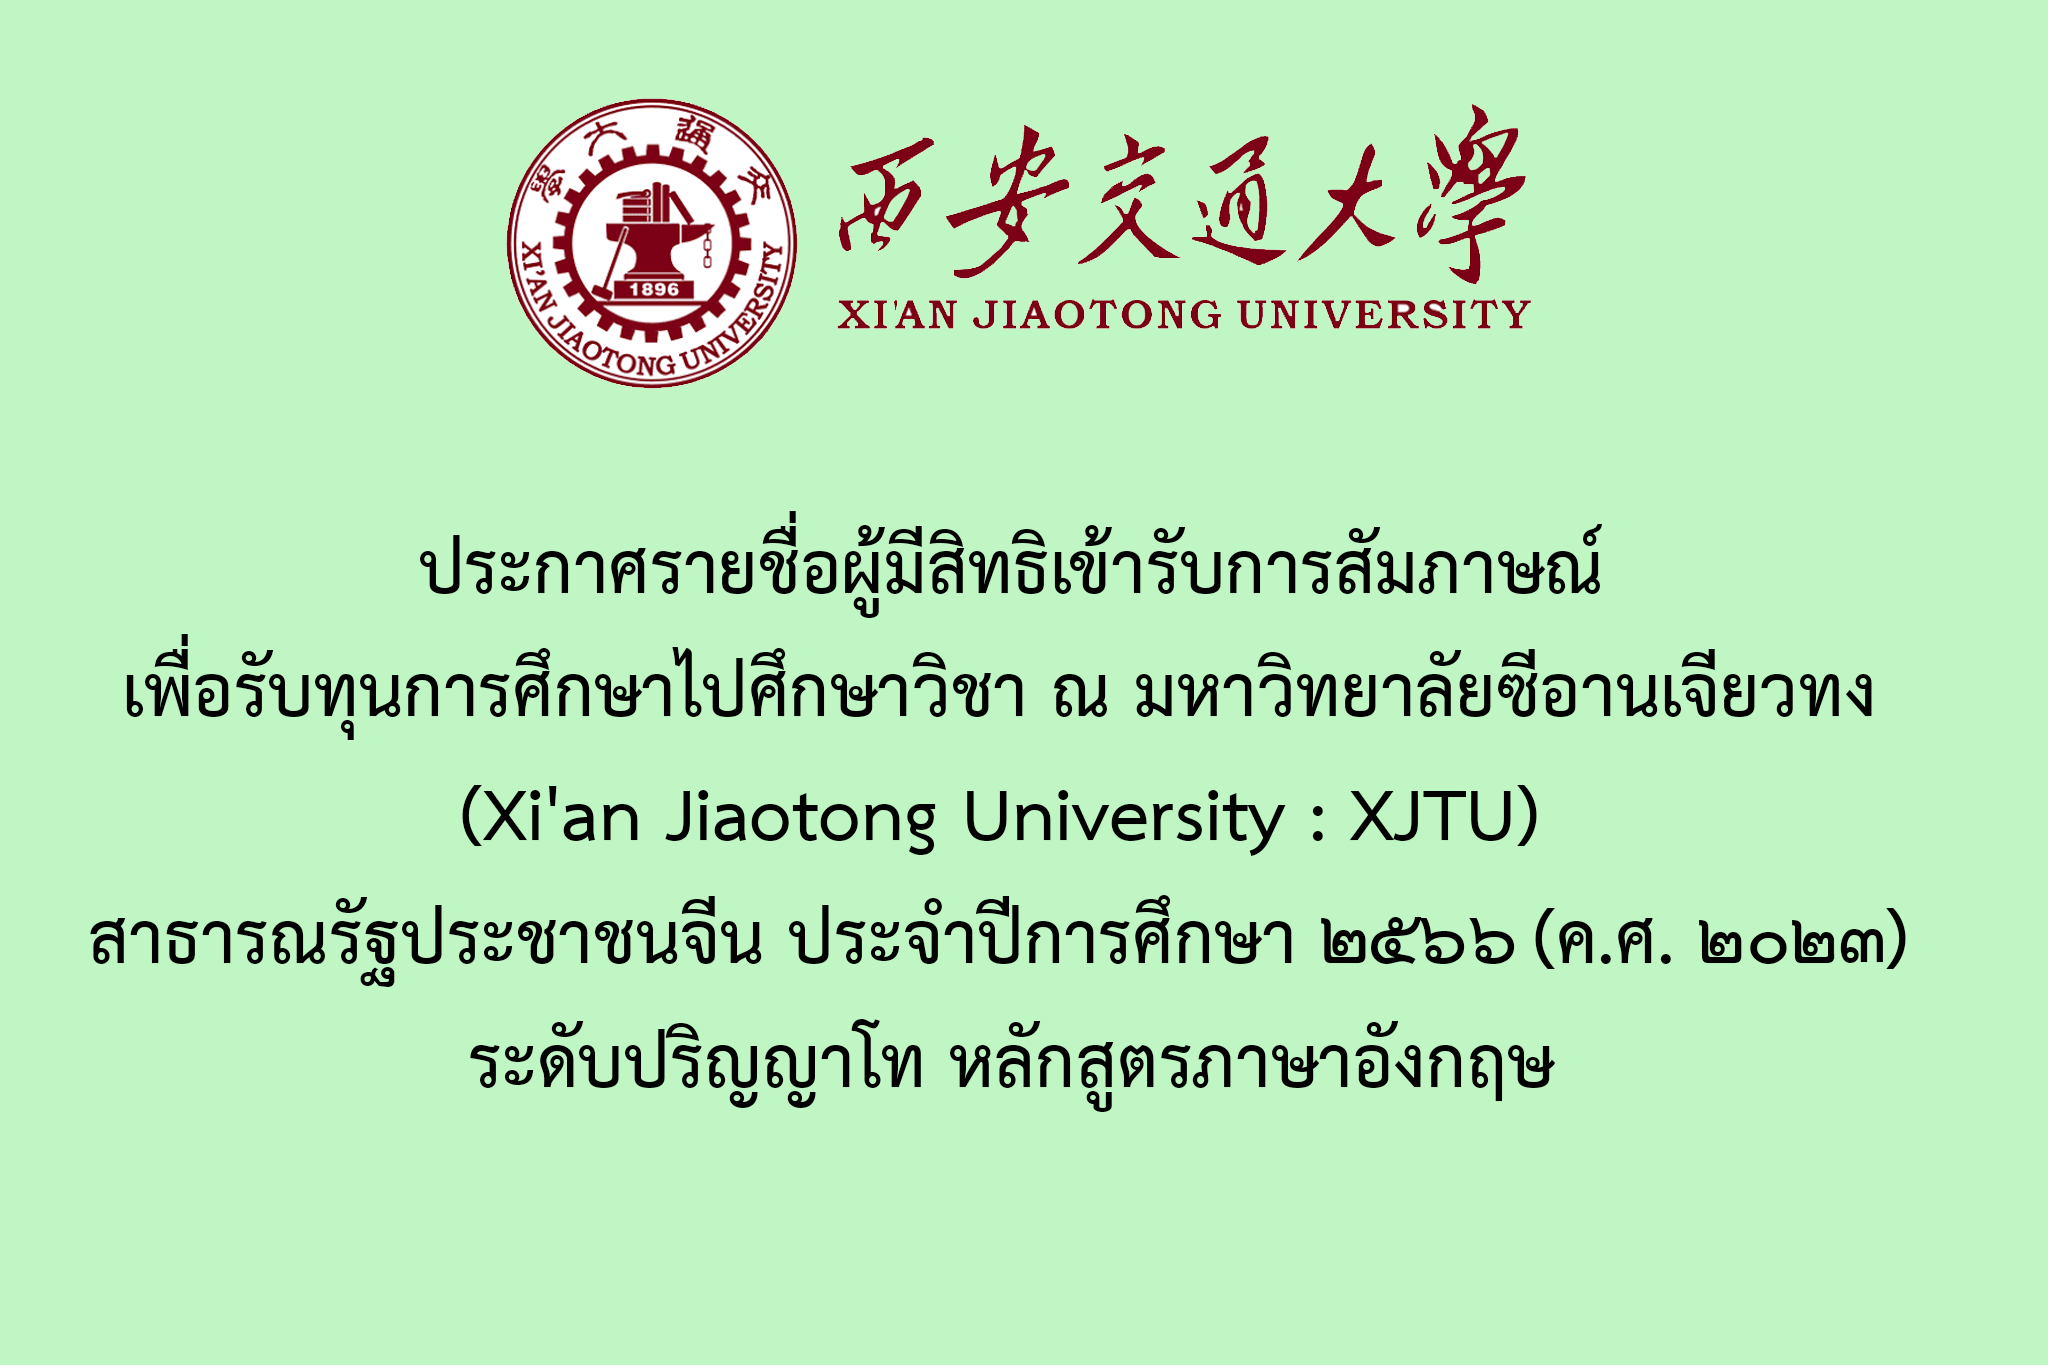 ประกาศรายชื่อผู้มีสิทธิเข้ารับการสัมภาษณ์เพื่อรับทุนการศึกษาไปศึกษาวิชา ณ มหาวิทยาลัยซีอานเจียวทง (Xi'an Jiaotong University : XJTU) สาธารณรัฐประชาชนจีน ประจำปีการศึกษา ๒๕๖๖ (ค.ศ. ๒๐๒๓) ระดับปริญญาโท หลักสูตรภาษาอังกฤษ